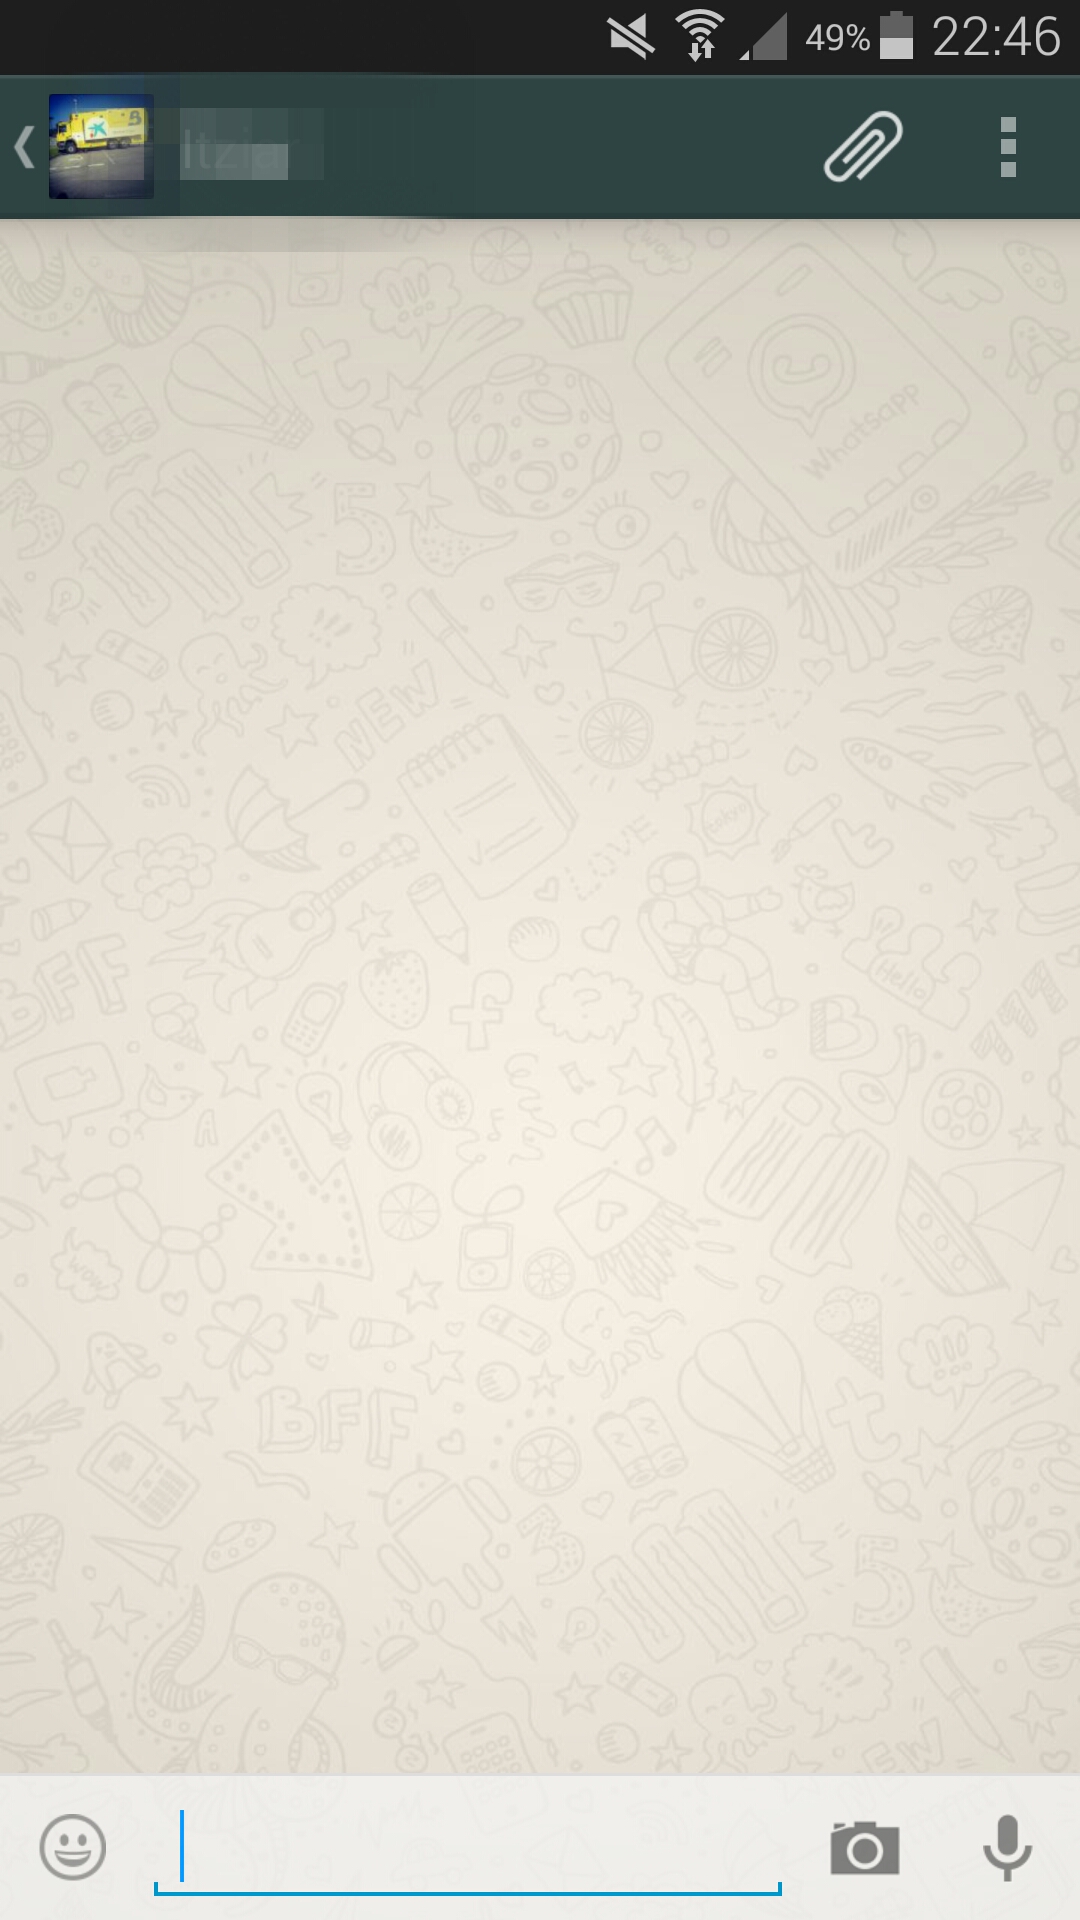 Captura de pantalla de una conversación de WhatsApp en versión Beta.